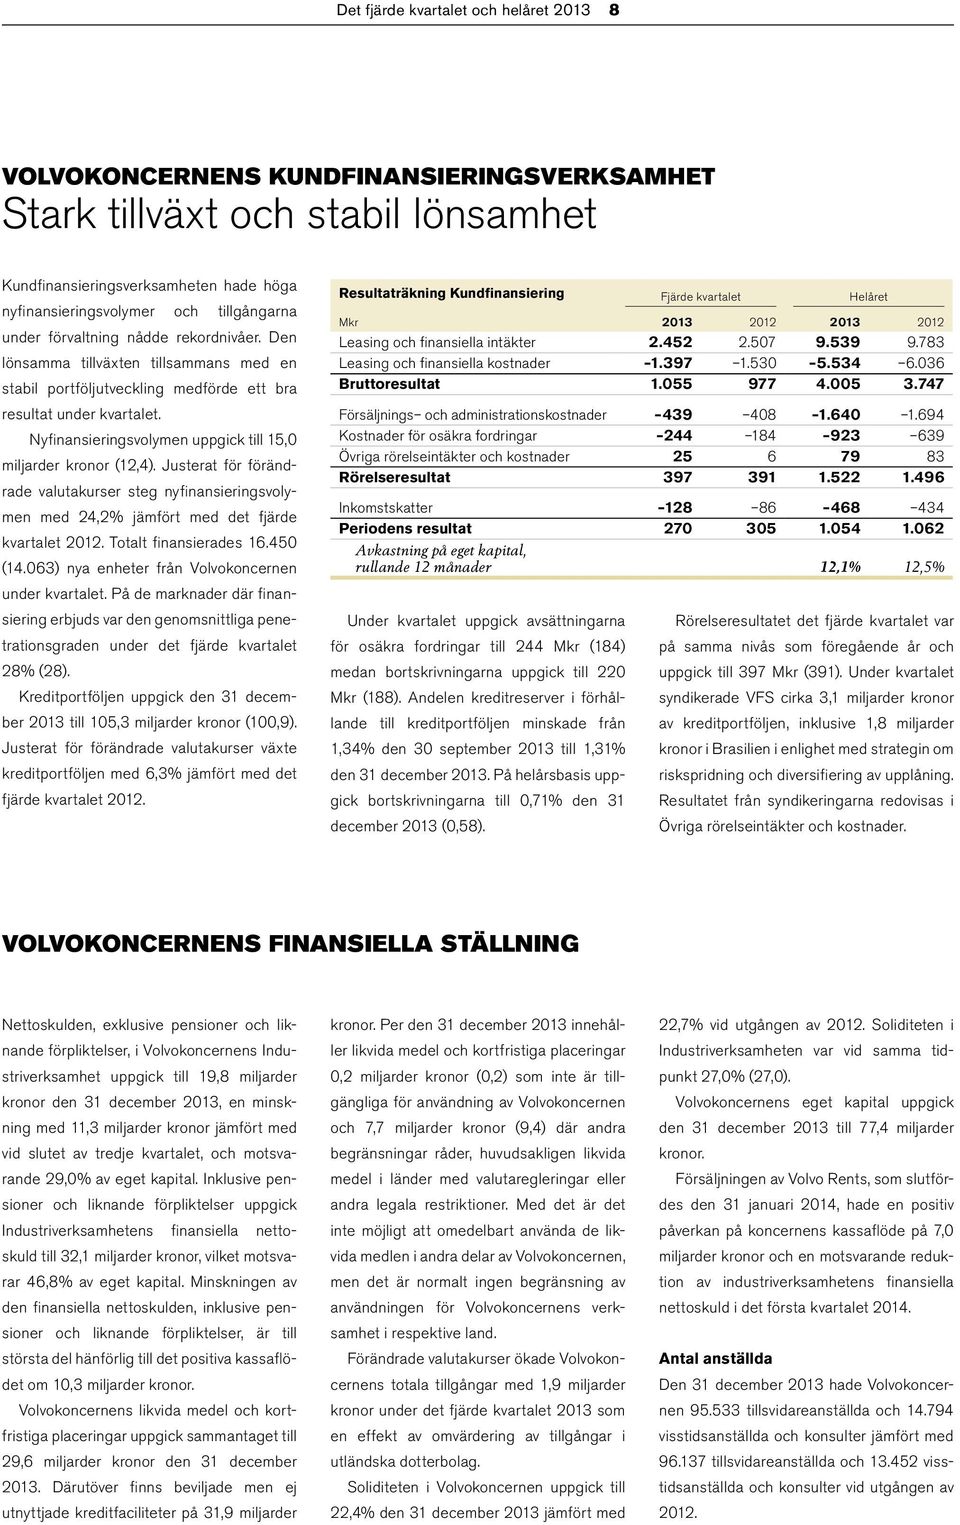 Nyfinansieringsvolymen uppgick till 15,0 miljarder kronor (12,4). Justerat för förändrade valutakurser steg nyfinansieringsvolymen med 24,2% jämfört med det fjärde kvartalet 2012.